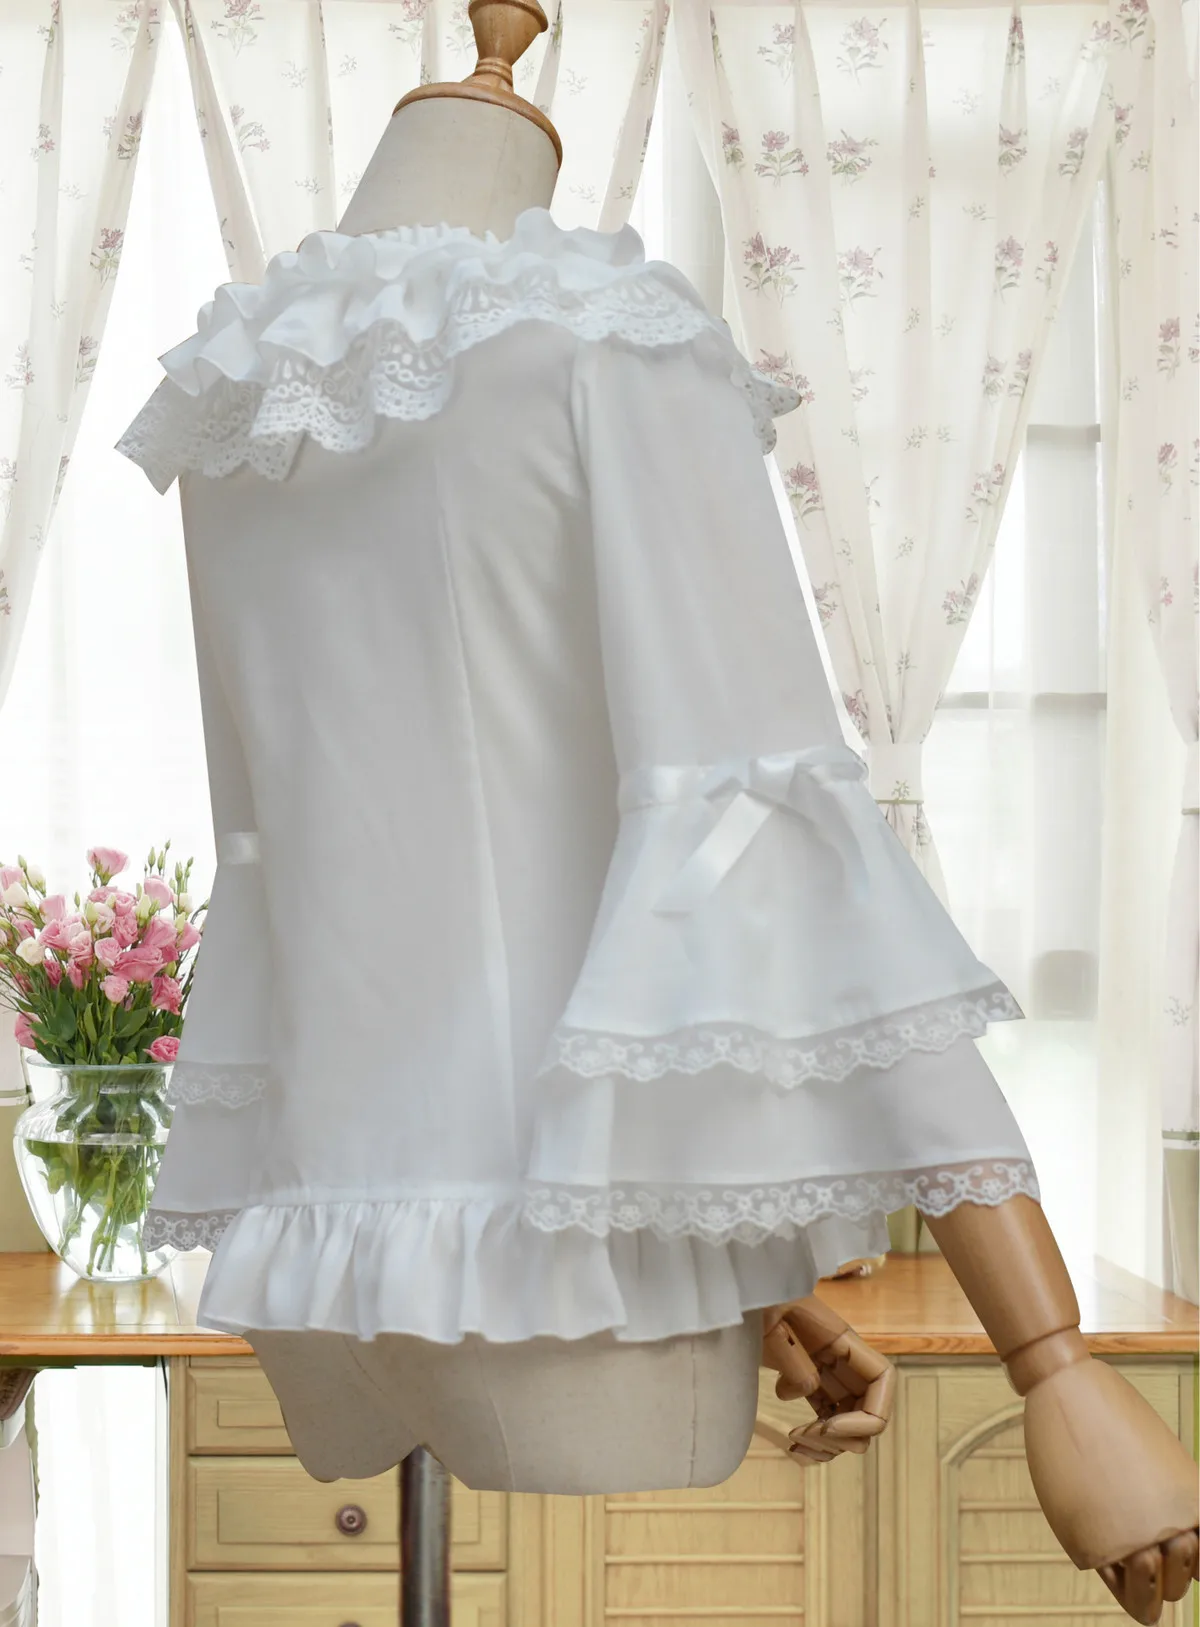 Pyjtrl осень элегантный Кружево Лолита с расклешенными рукавами шифоновая рубашка модные Повседневное белая блузка женская Рубашки для мальчиков женская одежда